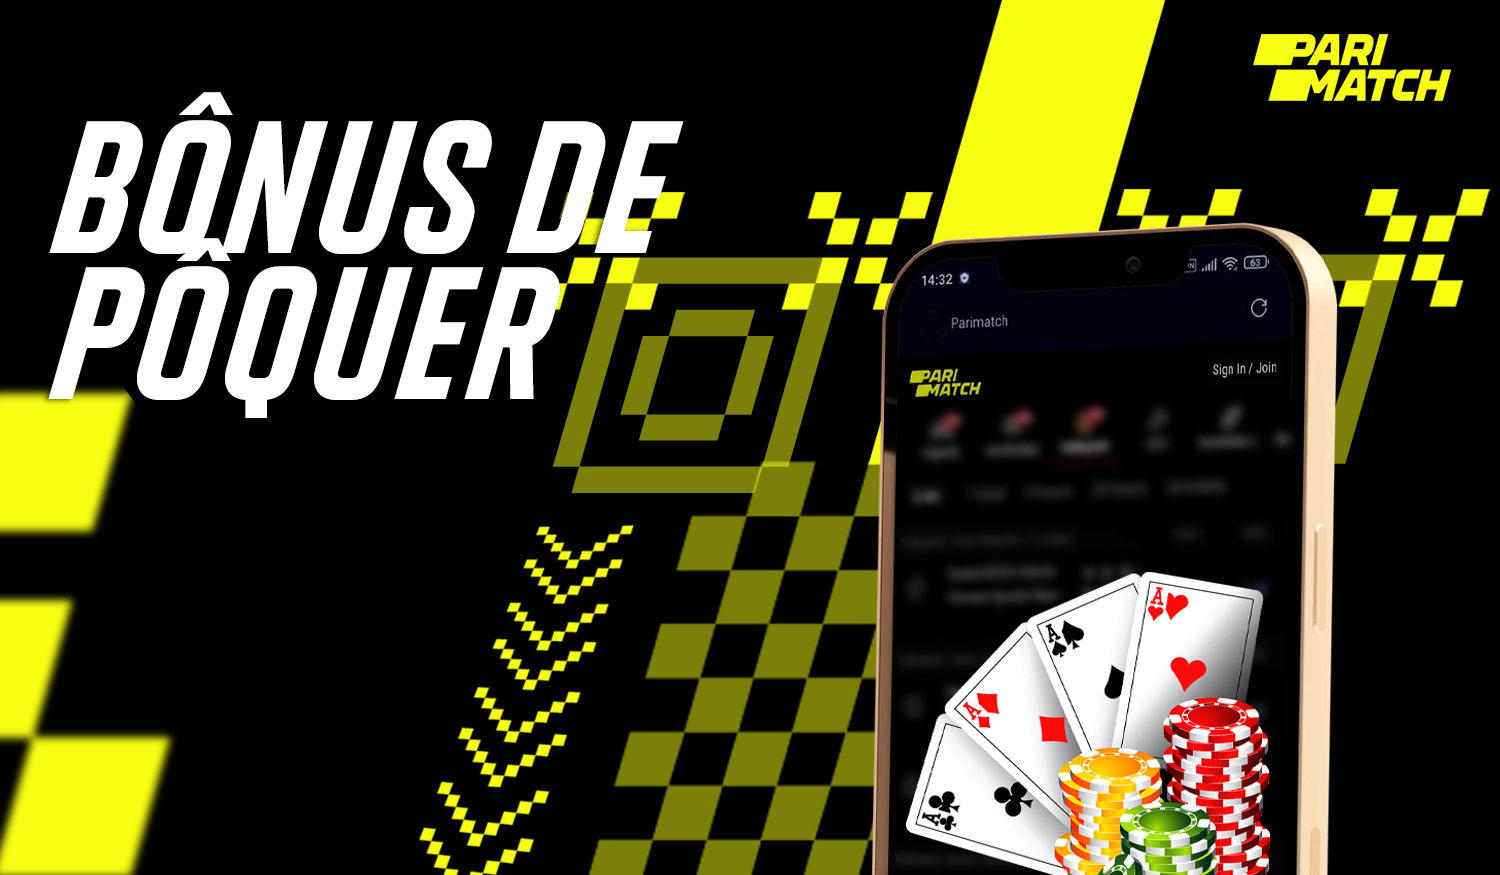 O cassino online Parimatch Brasil oferece sua própria sala de pôquer - Poker Match